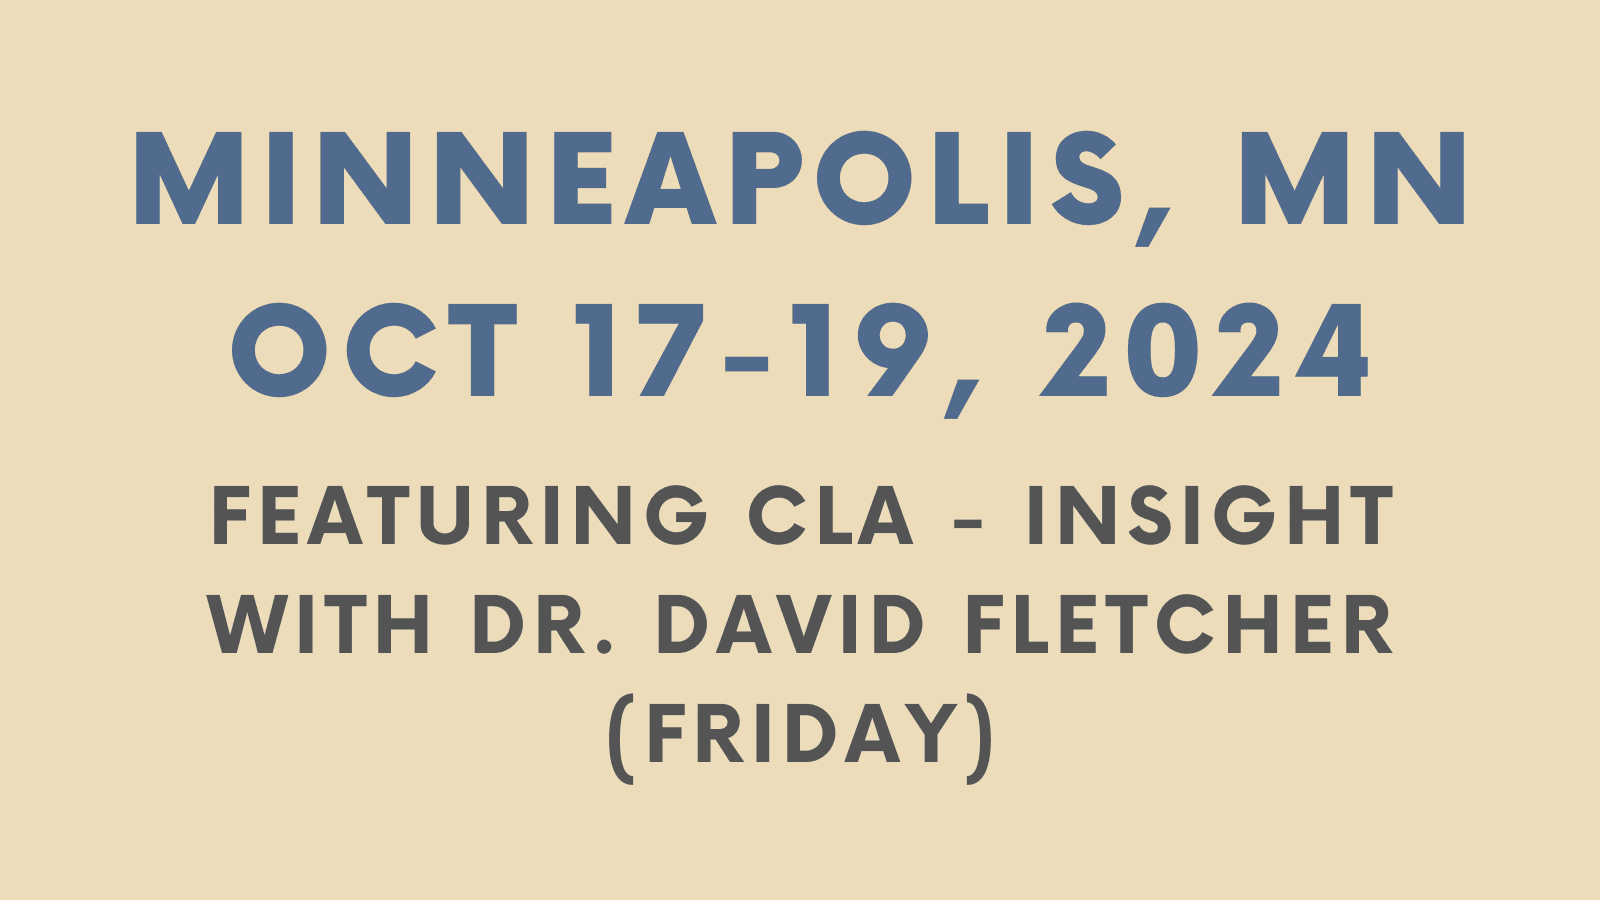 Minneapolis, Oct 2024